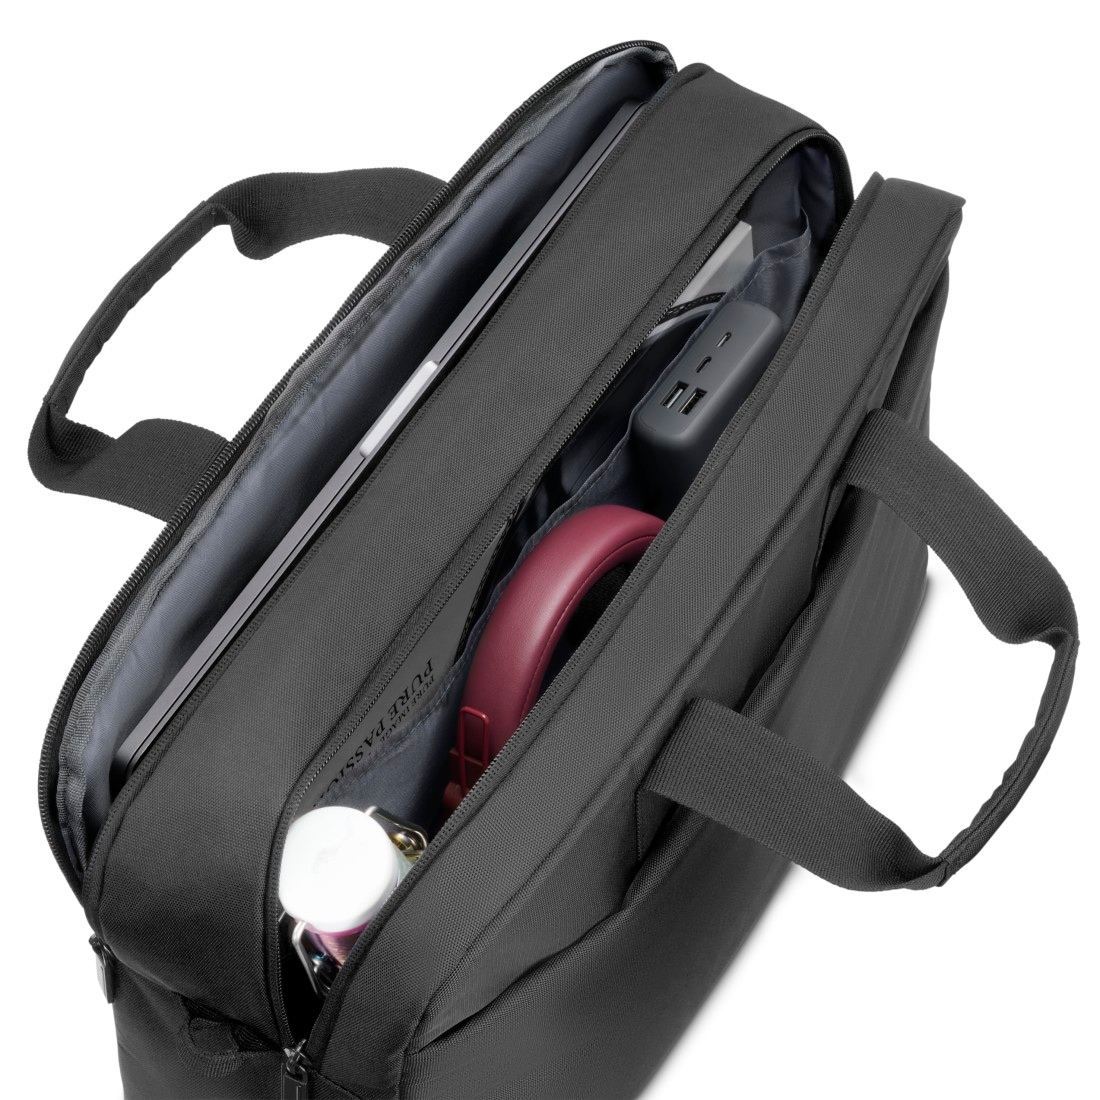 Hama Laptoptasche »Laptop-Tasche "Traveller", von 40 - 41 cm (15,6" - 16,2"), Schwarz«, 40 bis 41 cm, für Apple MacBook Pro, universell, Fächer, Farbe schwarz